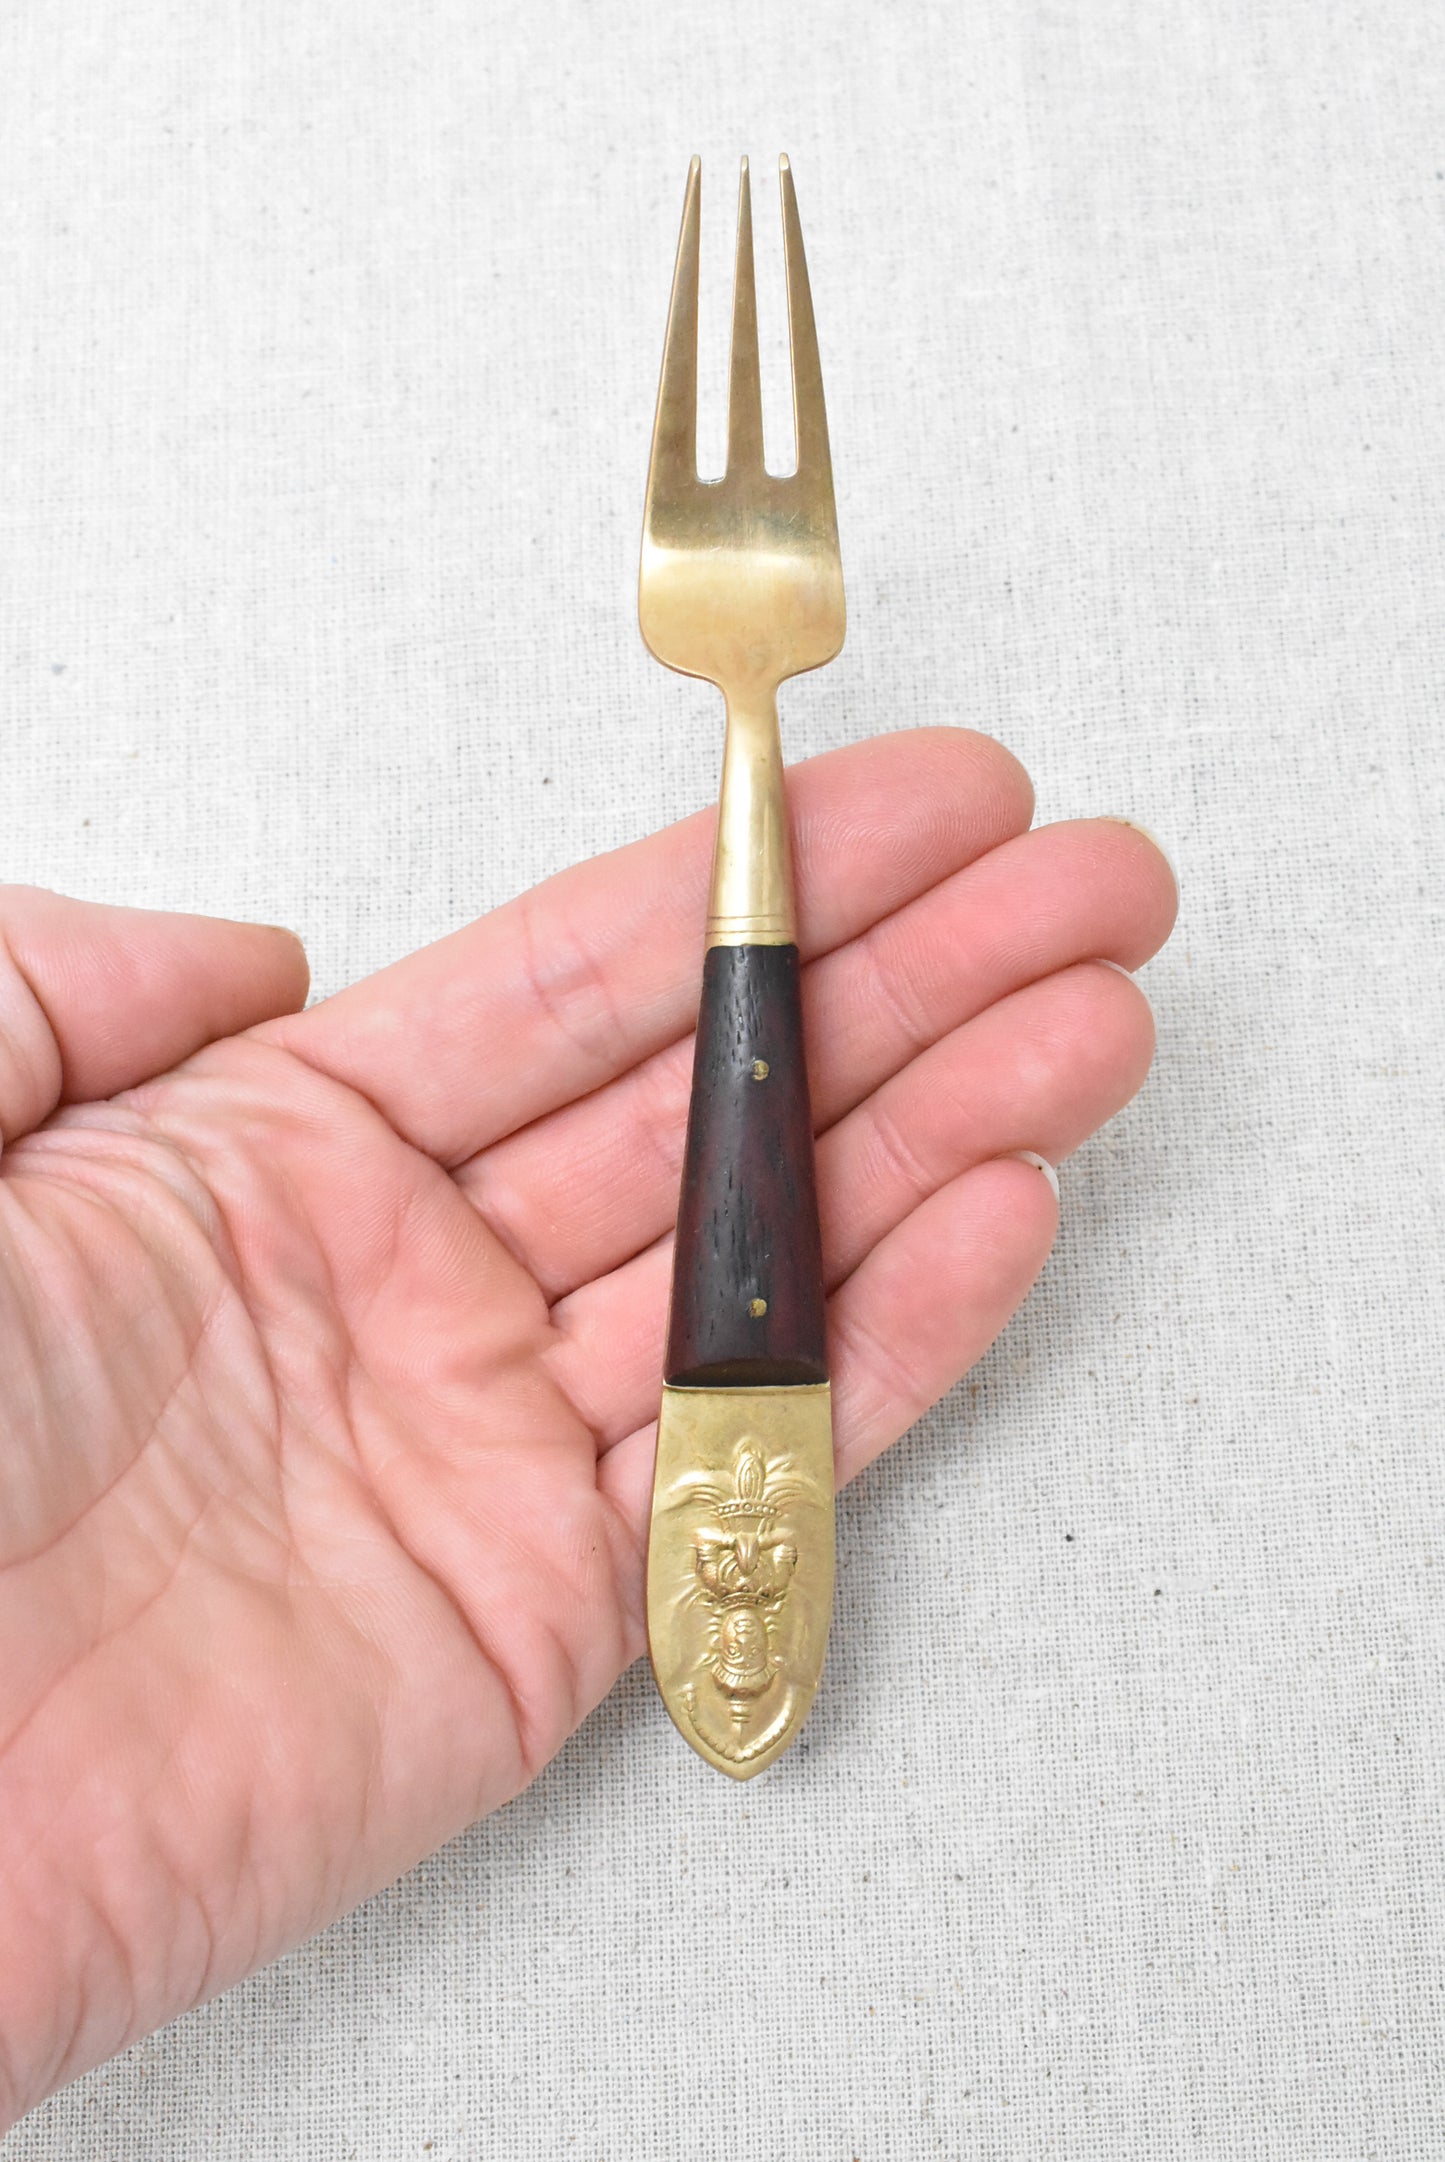 Solid bronze 6 seafood forks